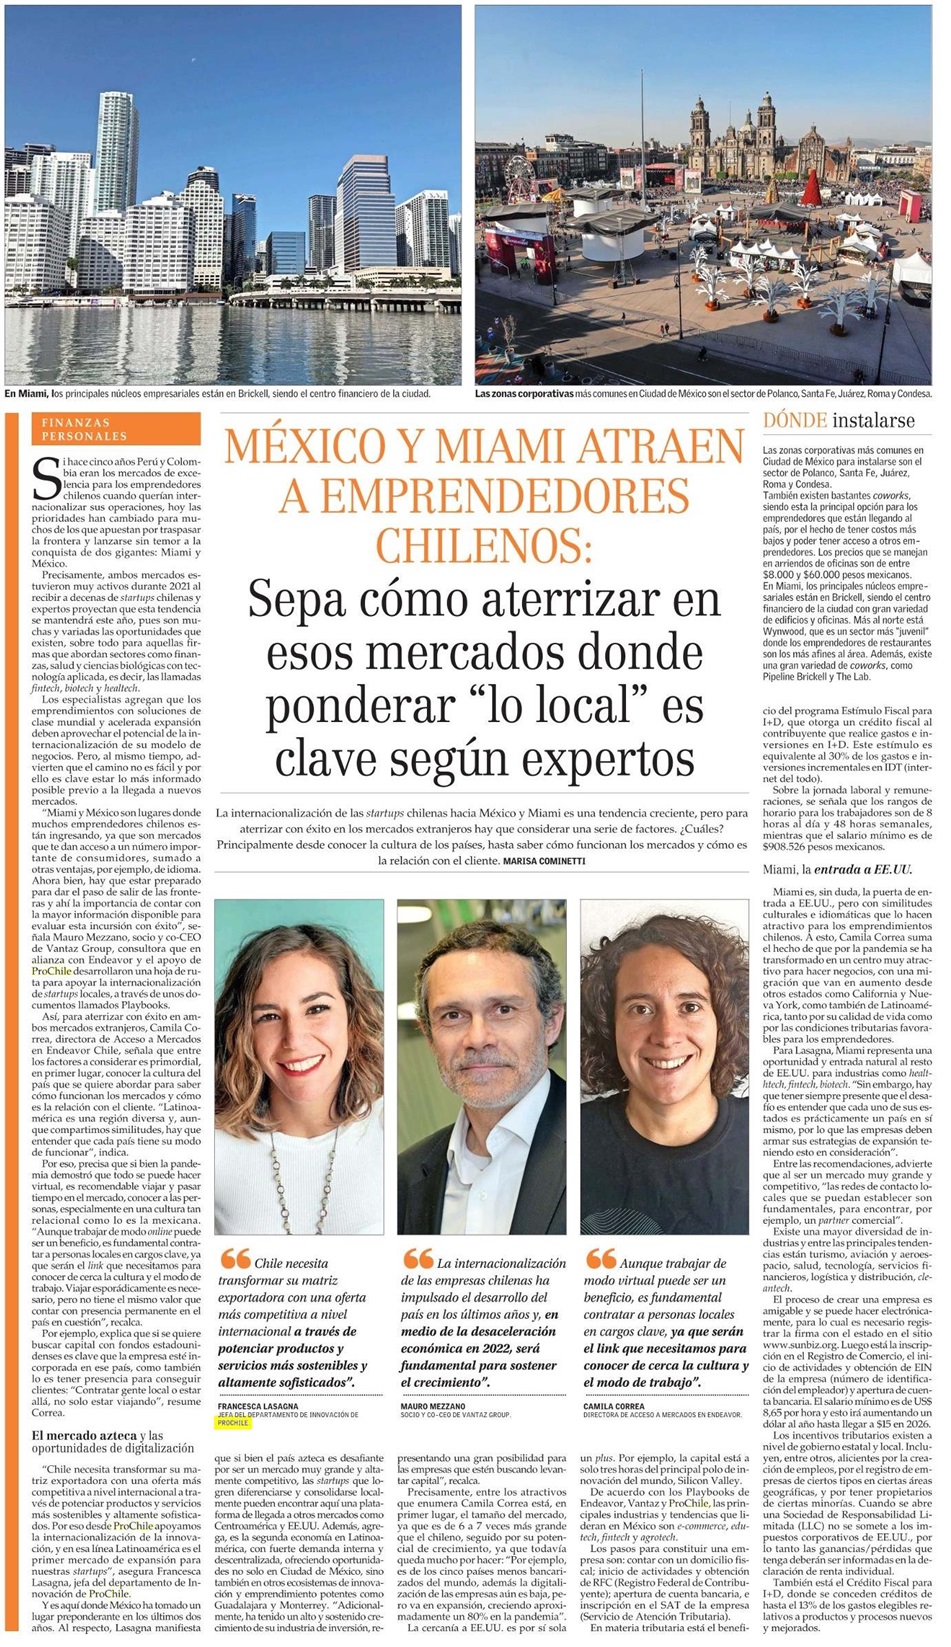 Destacado en prensa: México y Miami atraen a emprendedores chilenos